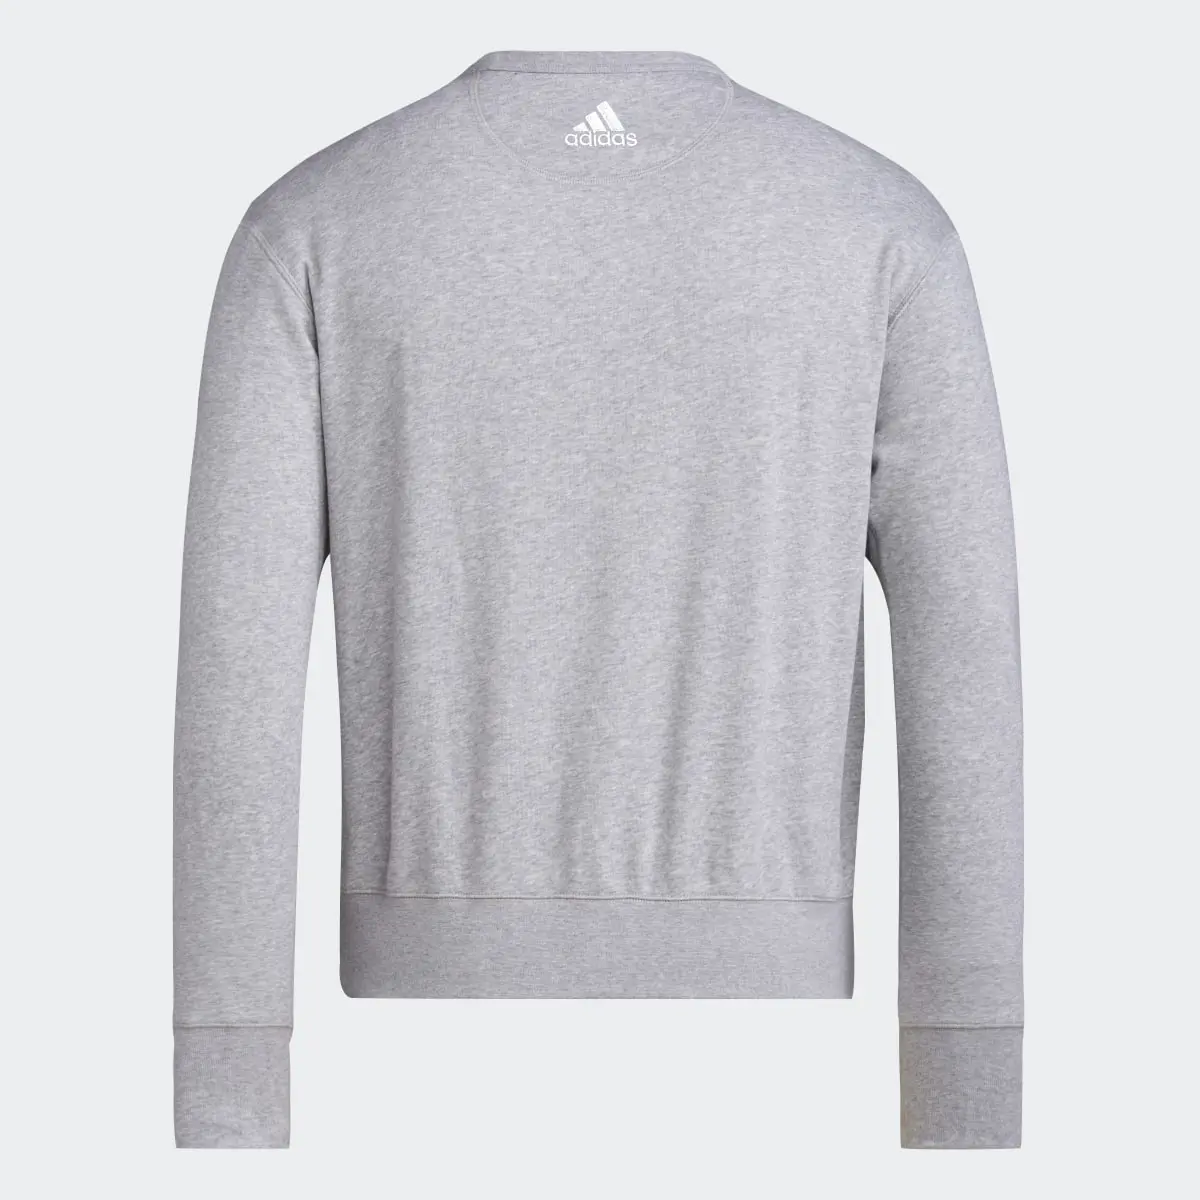 Adidas Rutgers Long Sleeve Sweatshirt. 2